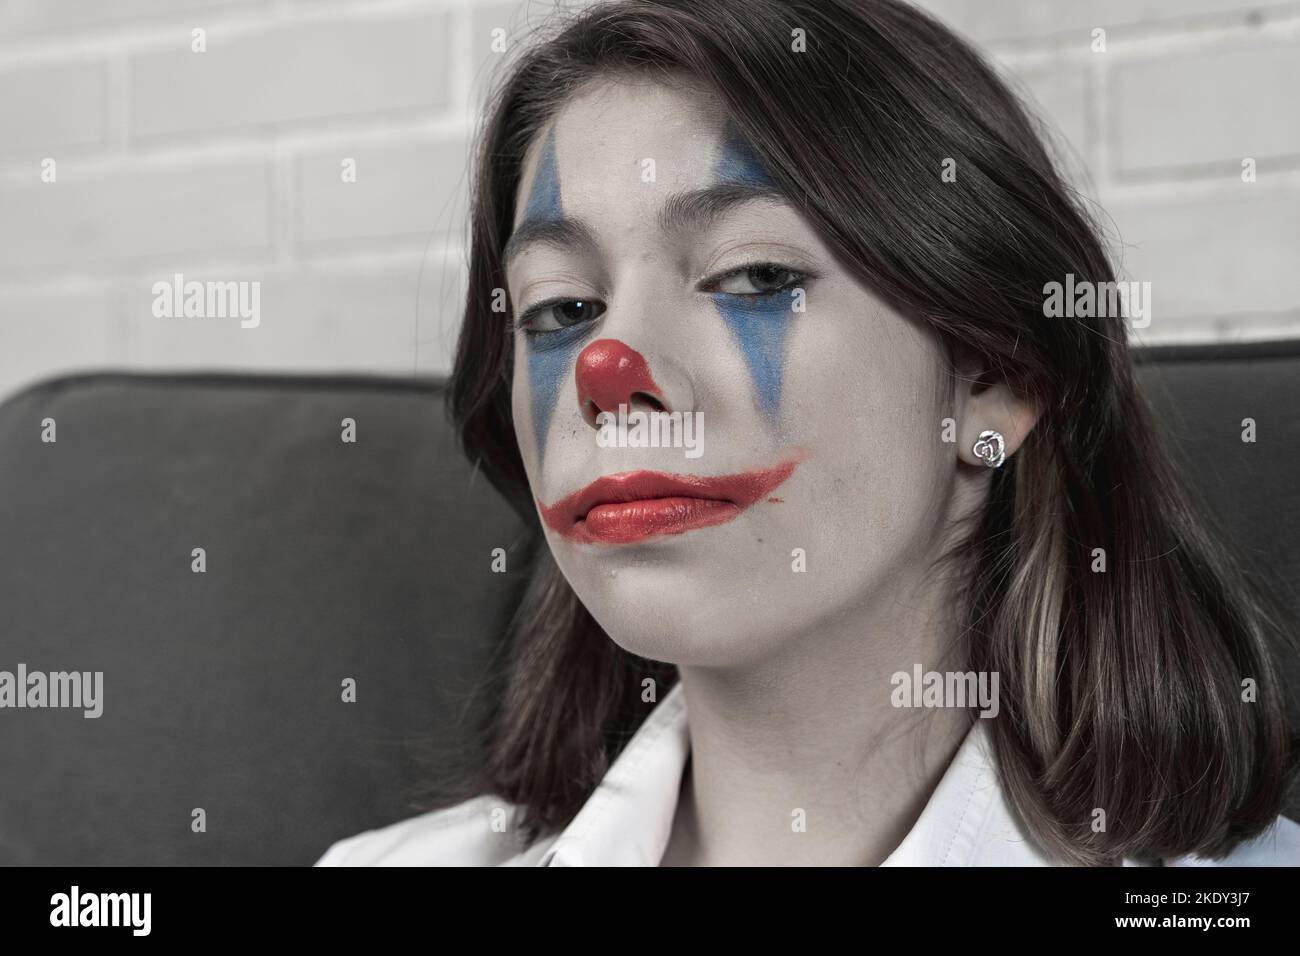 une adolescente avec le maquillage clown parle de quelque chose émotionnellement Banque D'Images